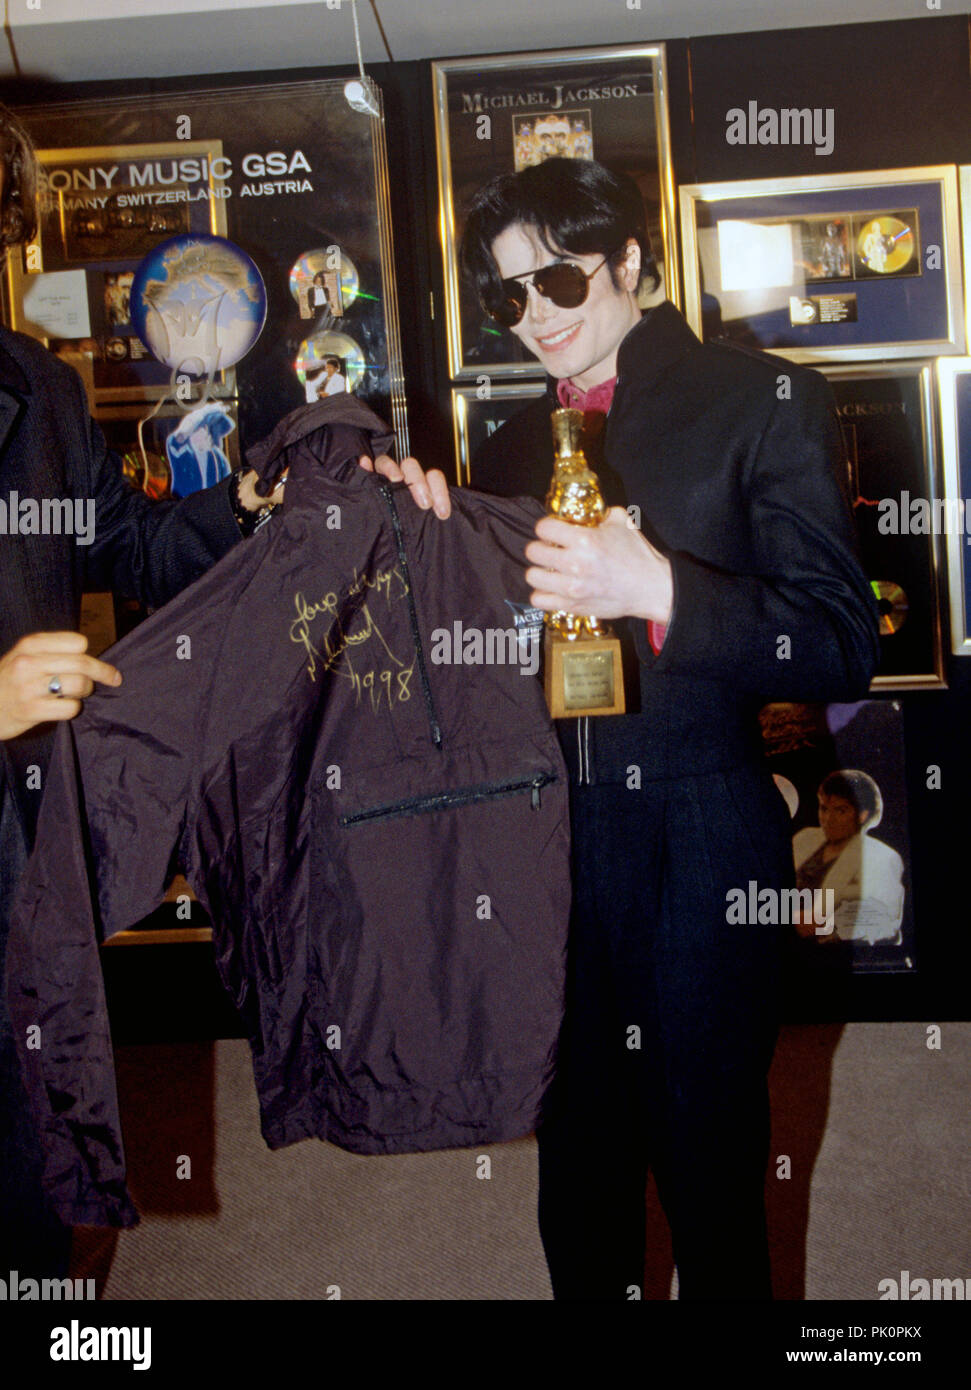 Michael Jackson am 01.11.1995 in Köln. | Verwendung weltweit  Stockfotografie - Alamy